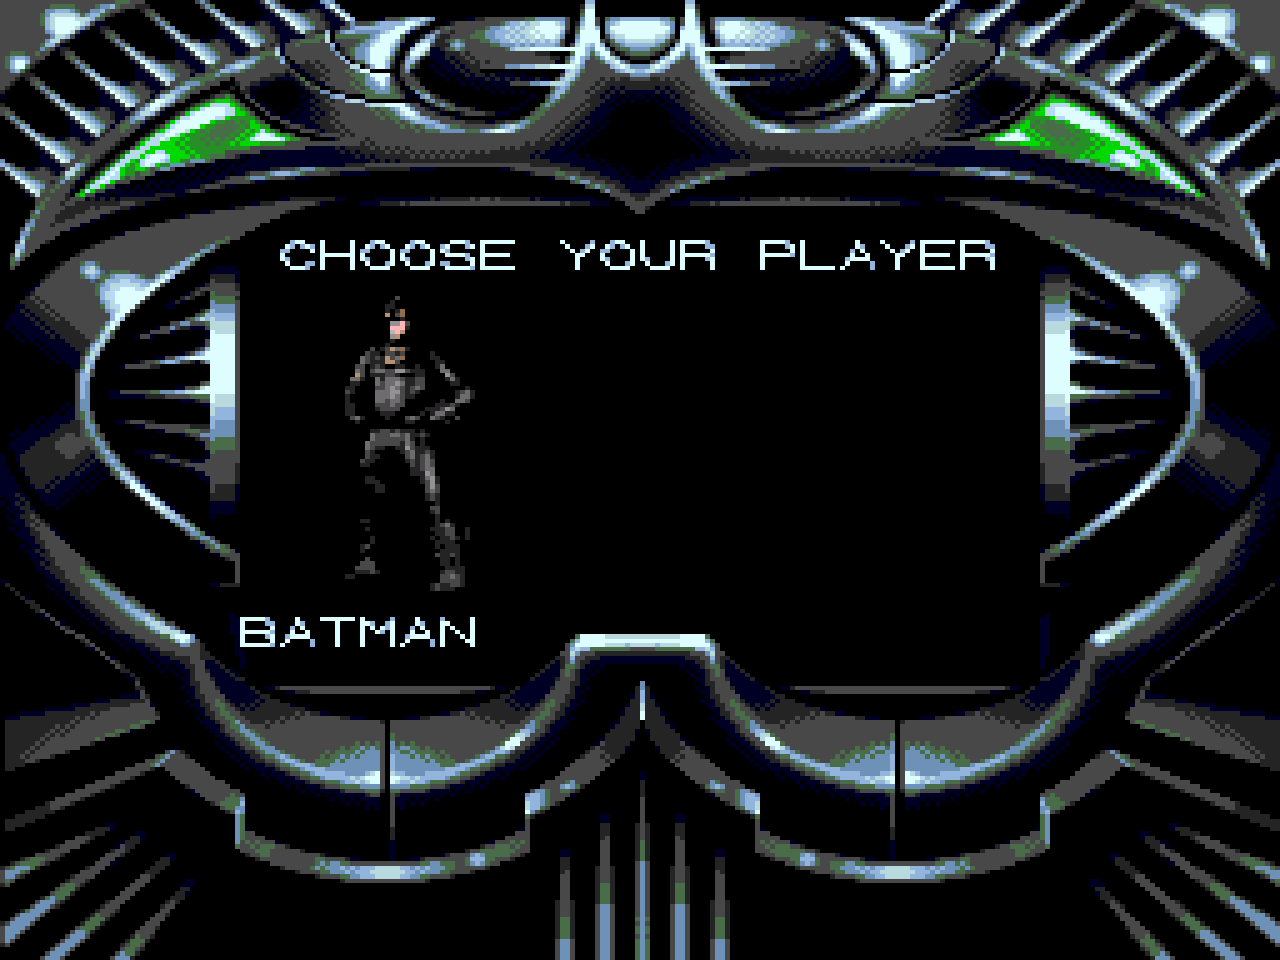 Batman forever sega. "Batman Forever" Sega Mega Drive. Игра Бэтмен на сеге. Бэтмен навсегда игра сега.